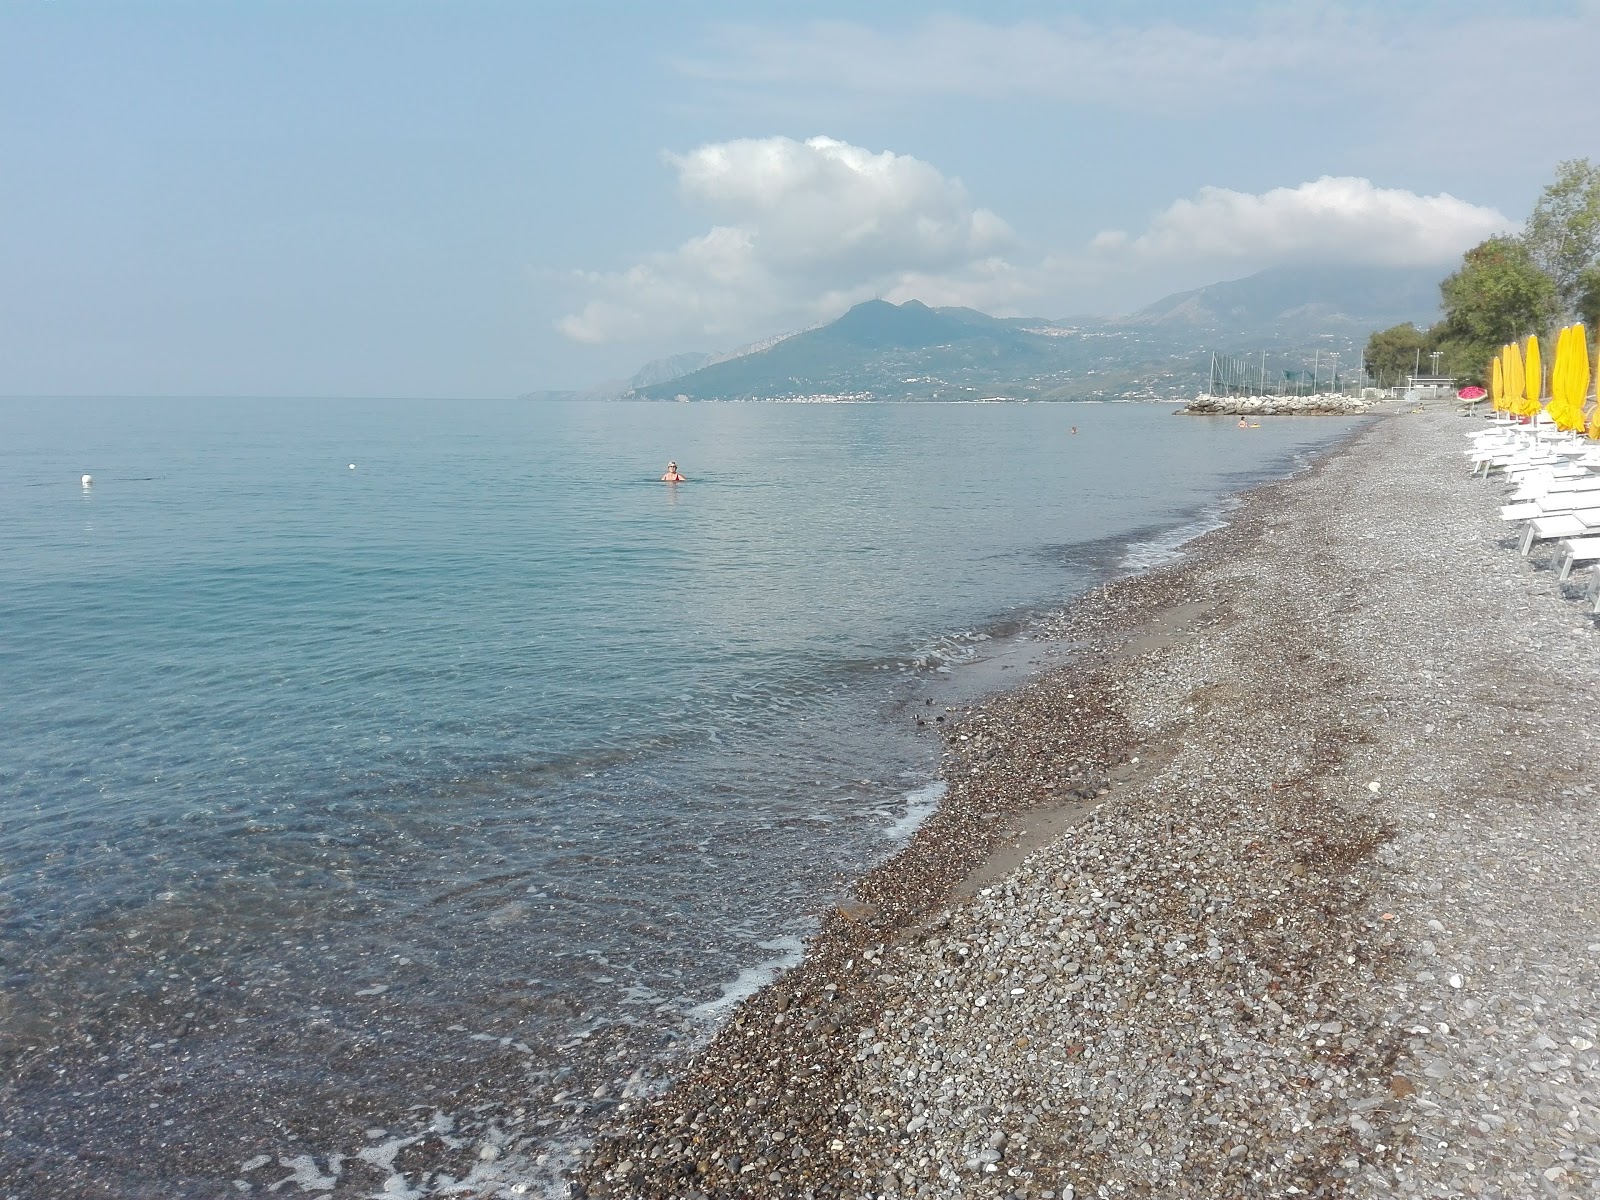 Capitello beach II'in fotoğrafı siyah kum ve çakıl yüzey ile